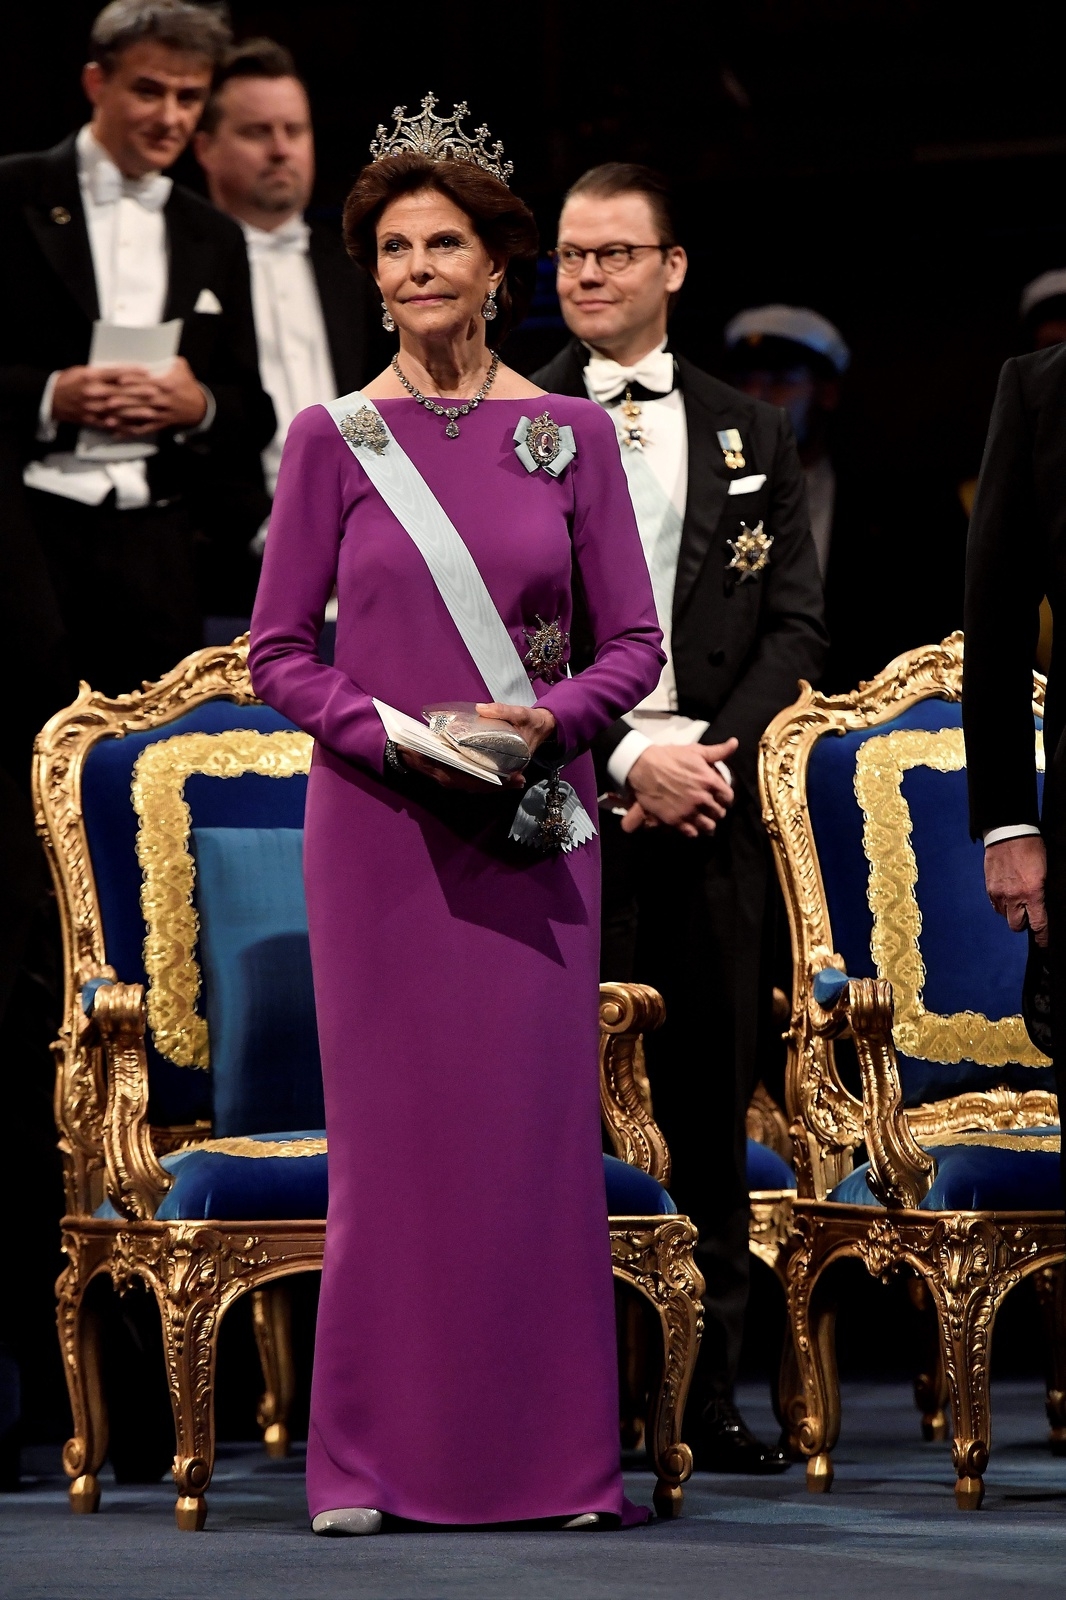 Drottning Silvia under Nobelprisutdelningen i Konserthuset Stockholm.
Foto: Jonas Ekströmer/TT